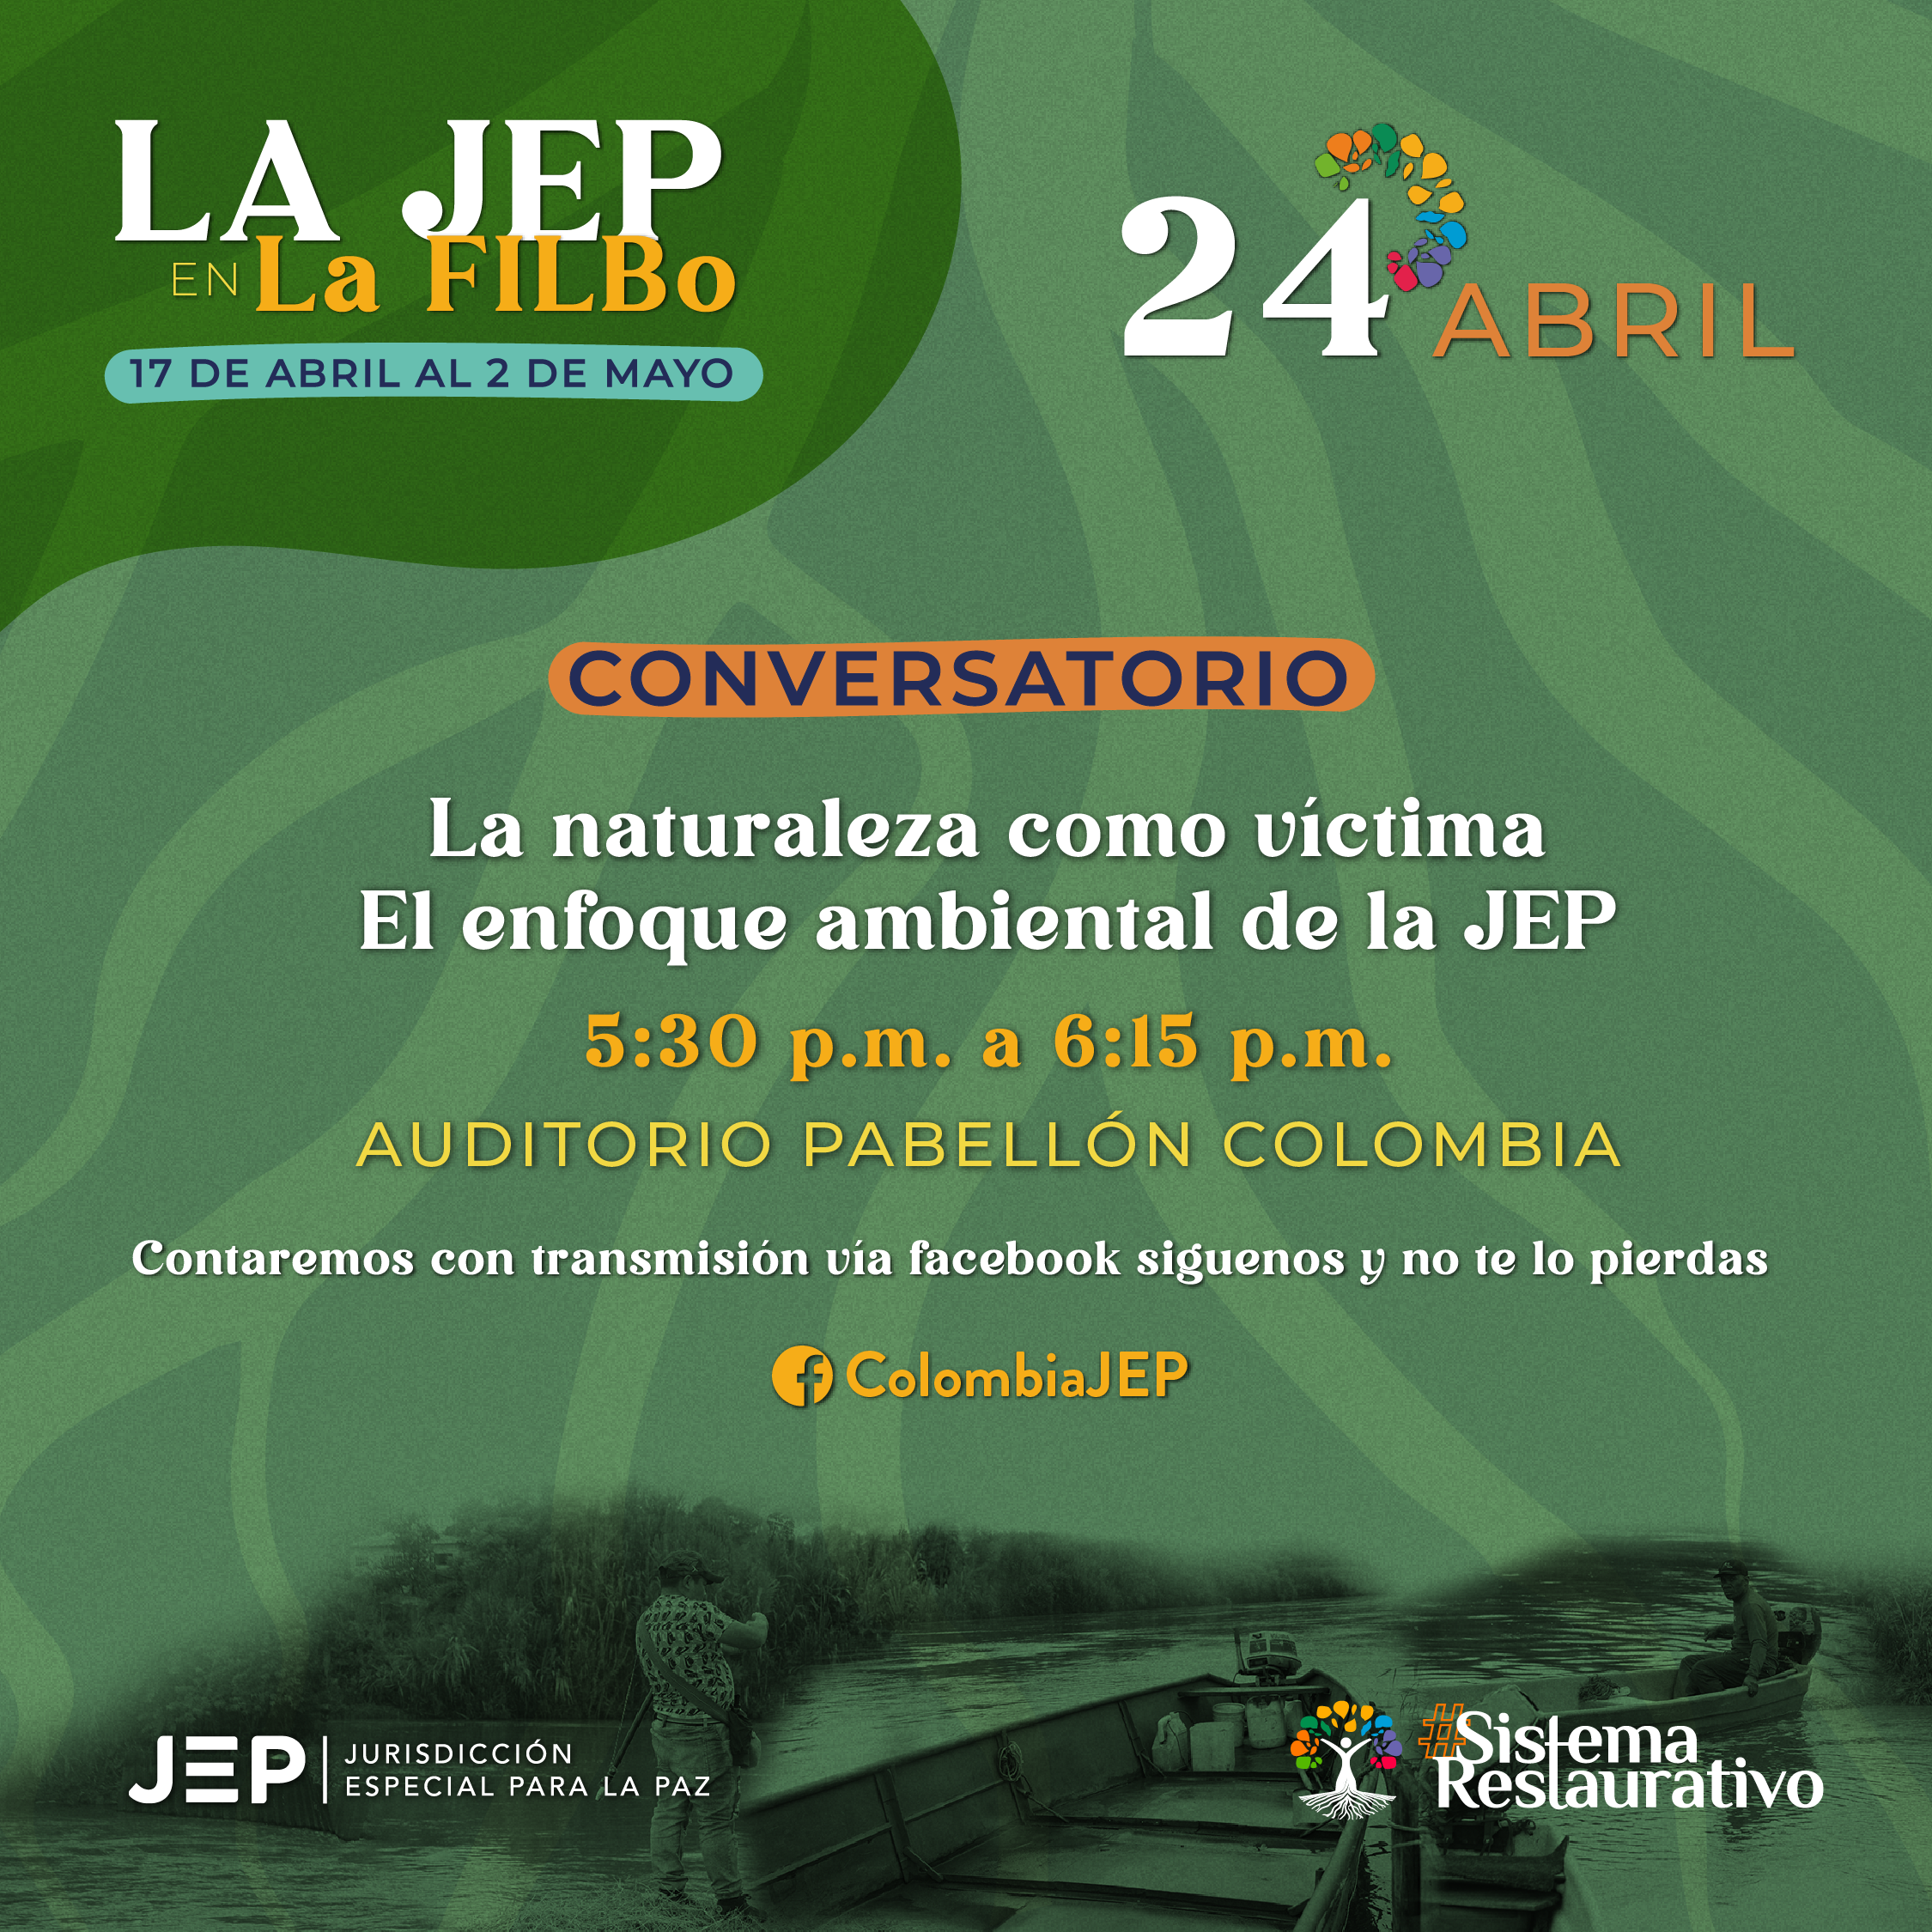 LA JEP EN La FILBO CONVERSATORIO La naturaleza como víctima El enfoque ambiental de la JEP 5:30 p.m. a 6:15 p.m. AUDITORIO PABELLÓN COLOMBIA